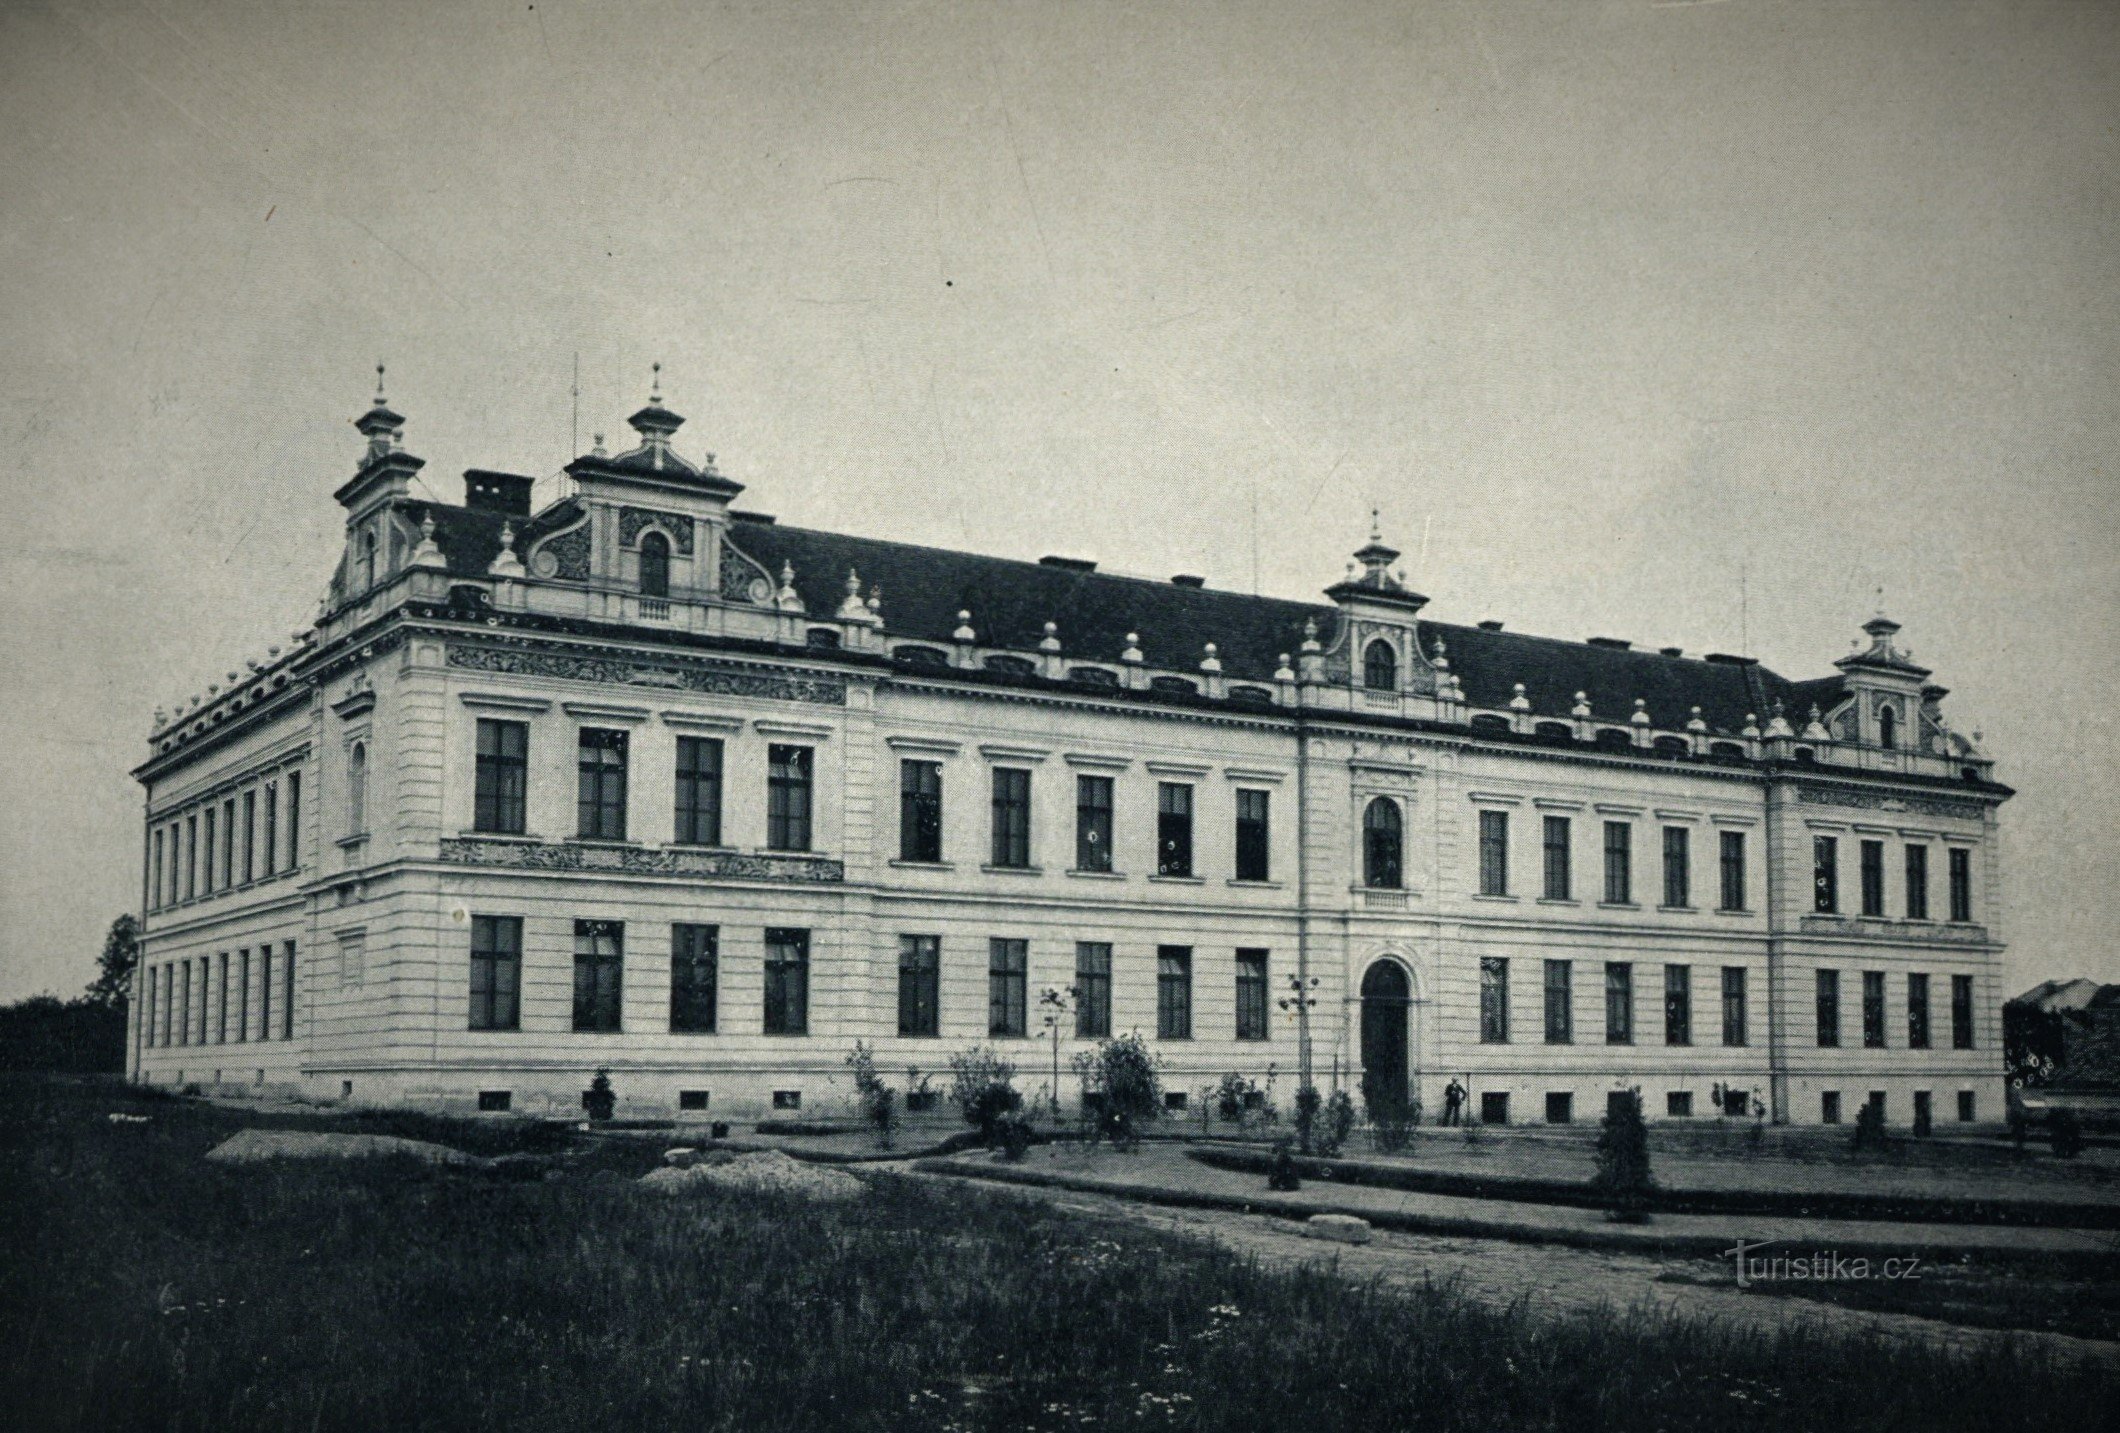 C. k. všeobecná škola řemeslnická (Jaroměř, 1904)